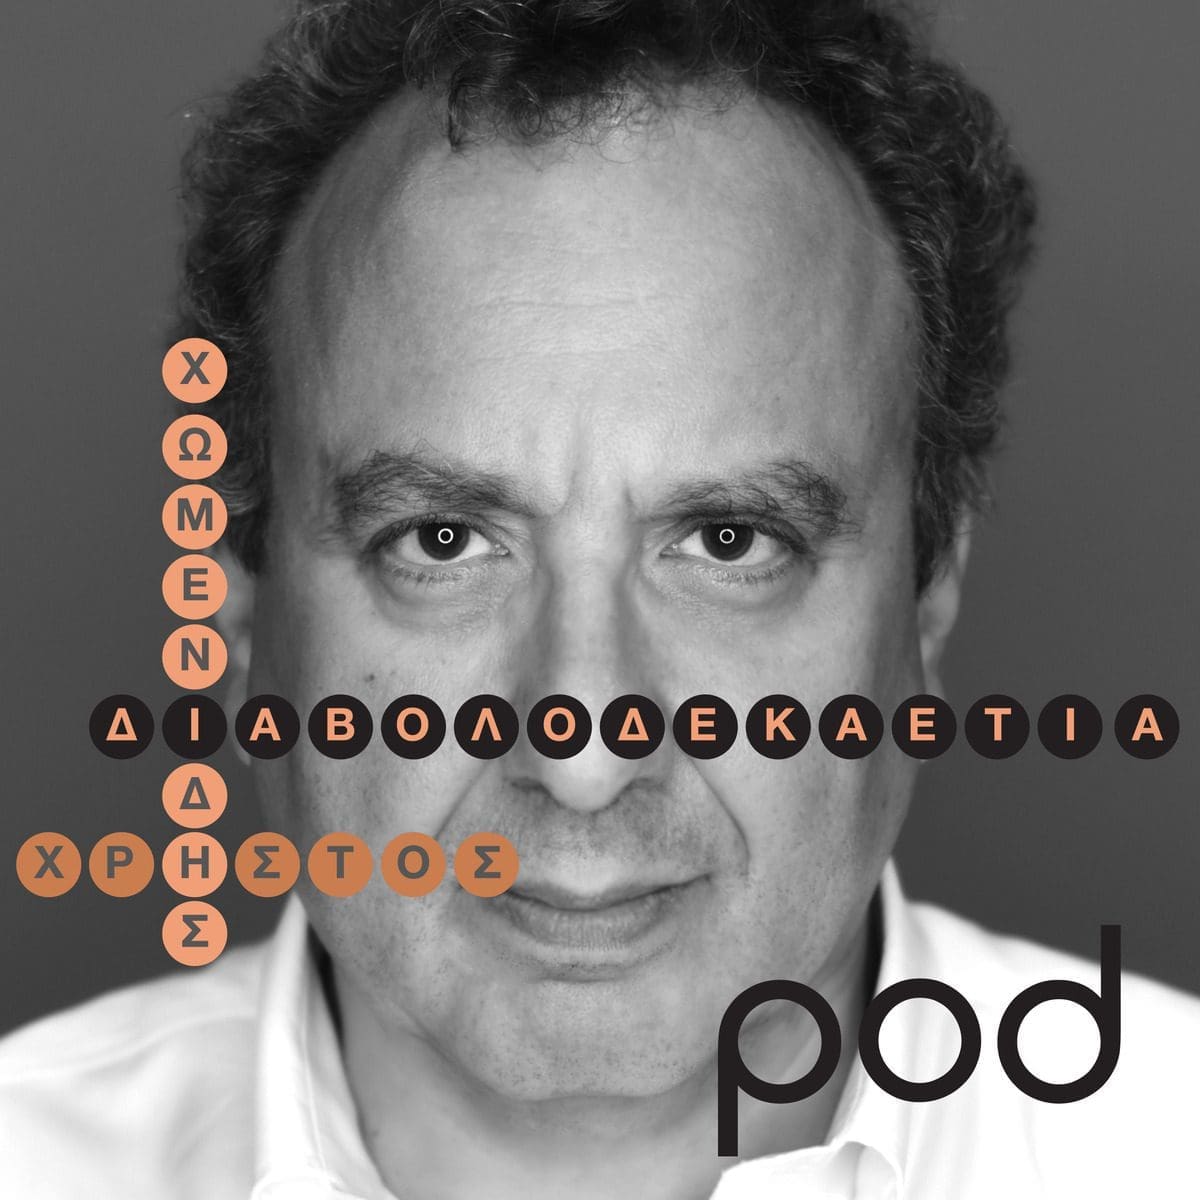 Νέο podcast «Διαβολοδεκαετία» με τον Χρήστο Χωμενίδη